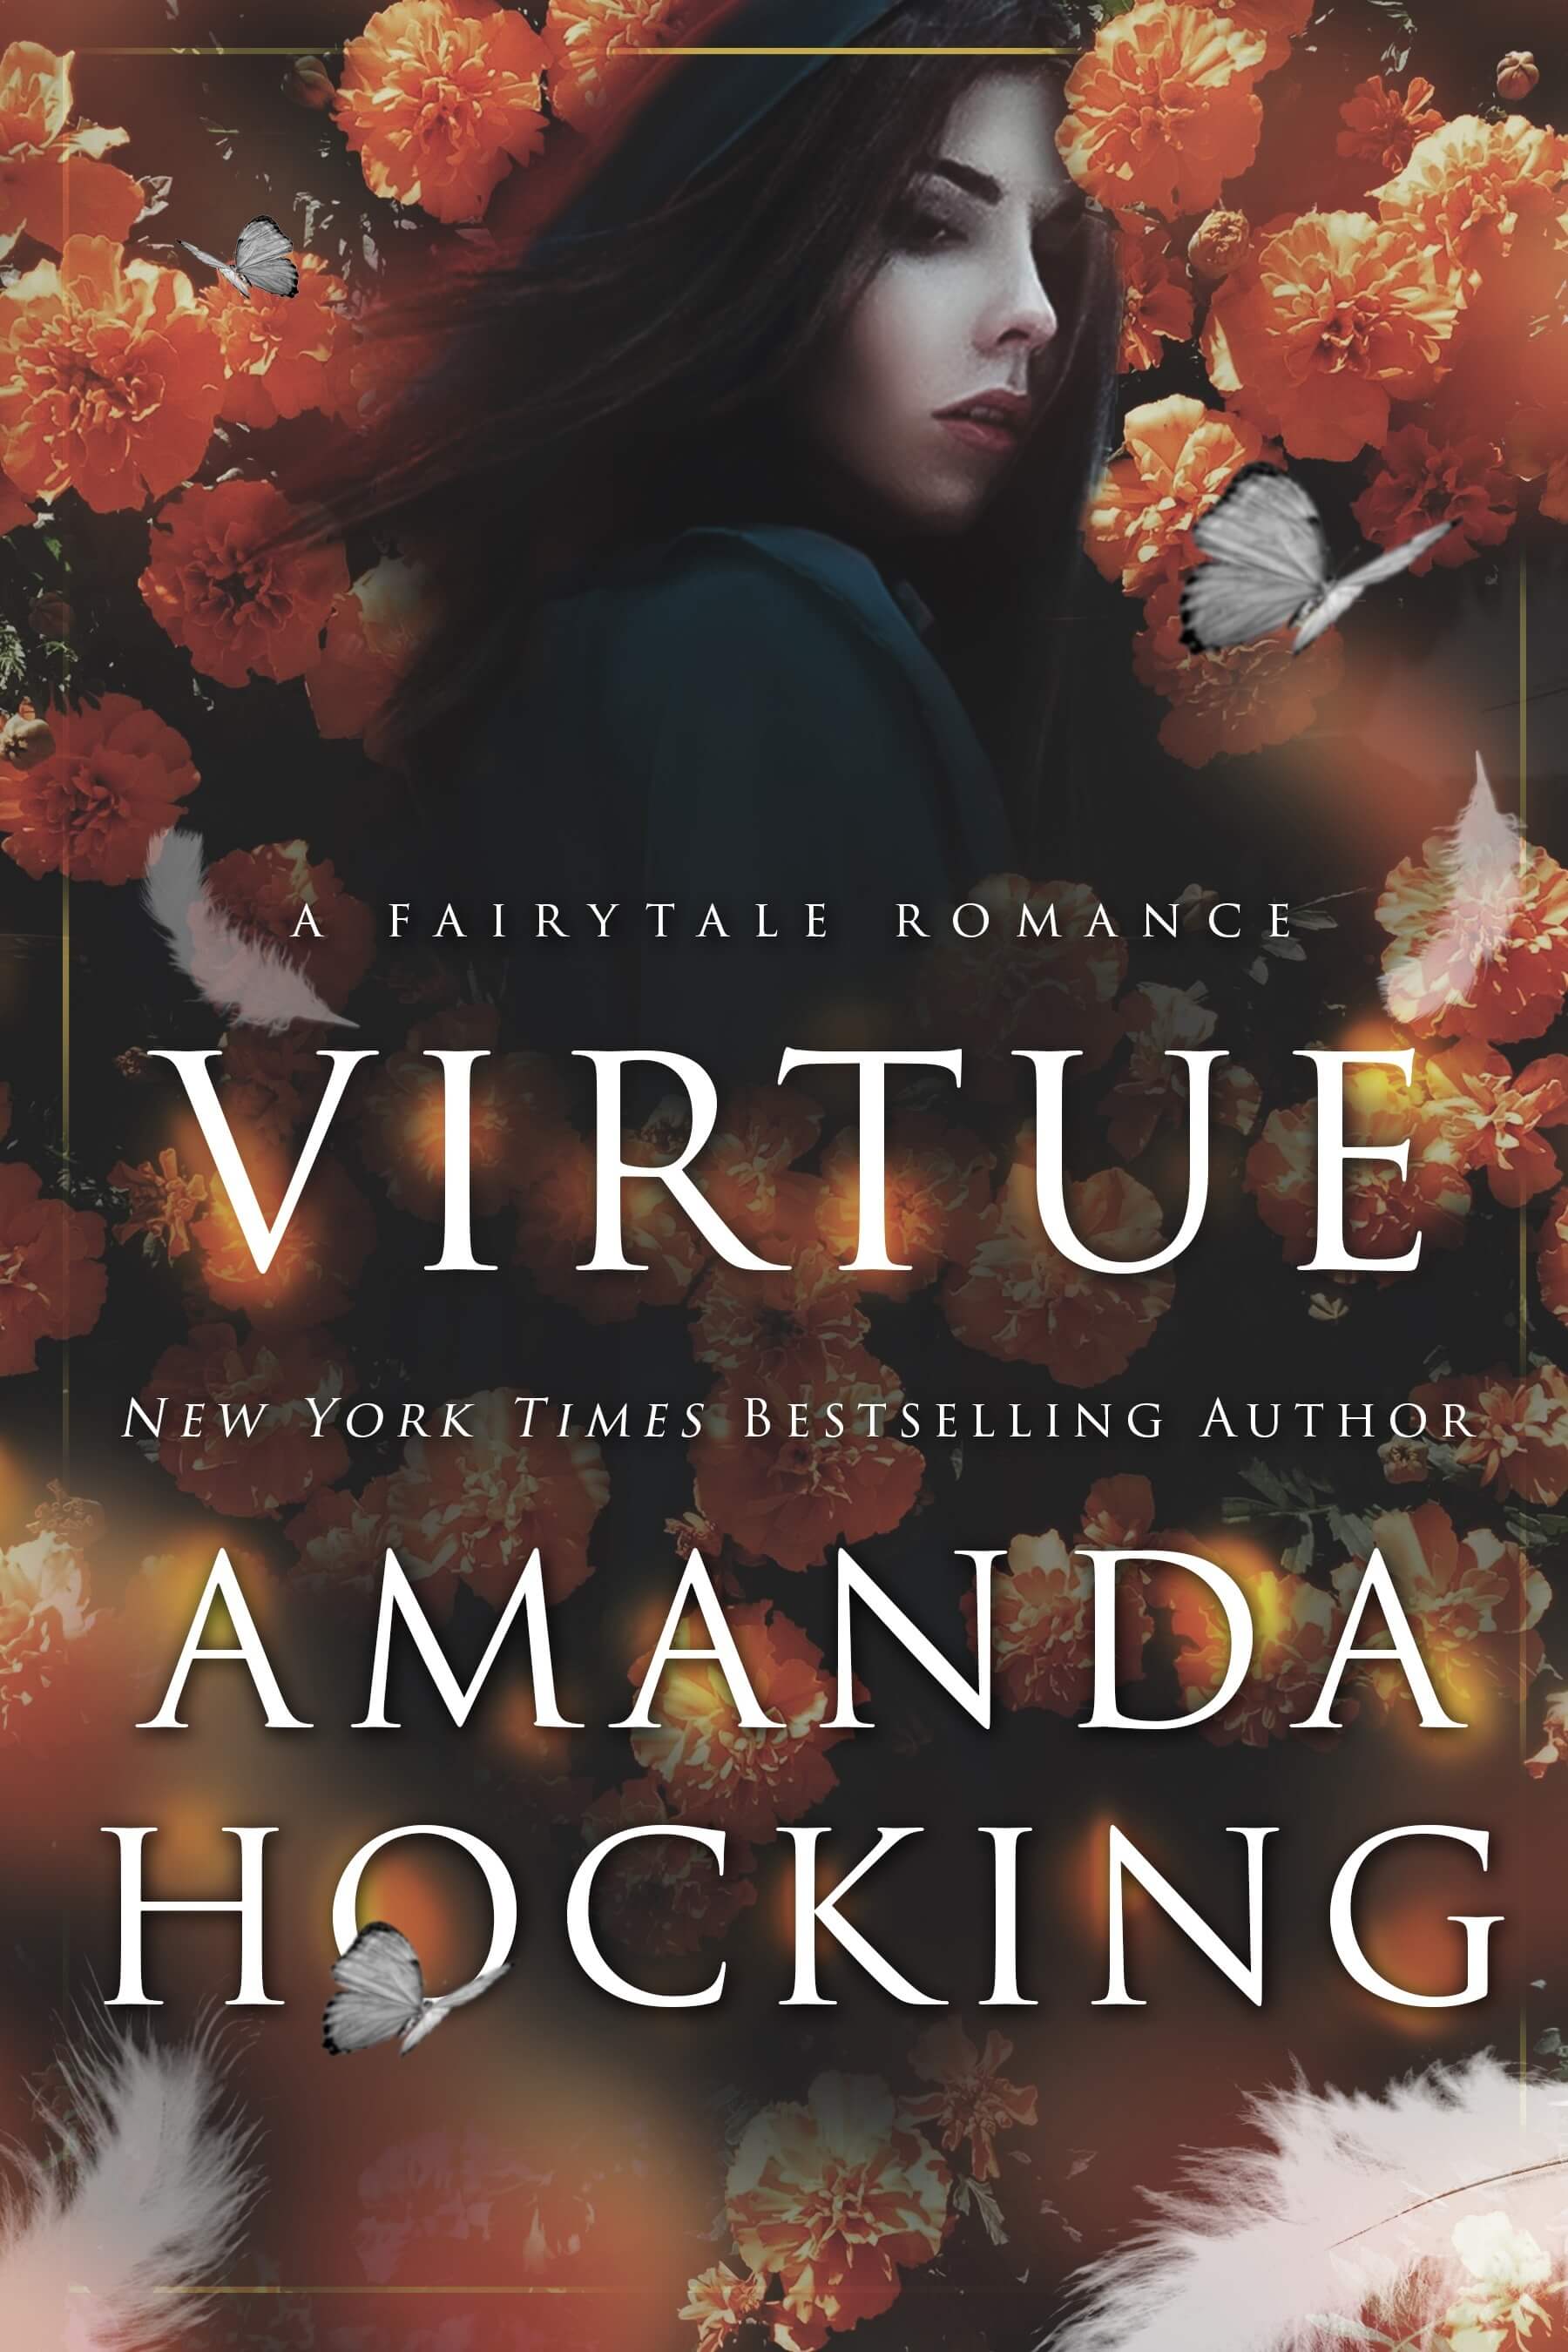 5. Amanda Hocking Is a Self-Publishing Rockstar 📚🌟